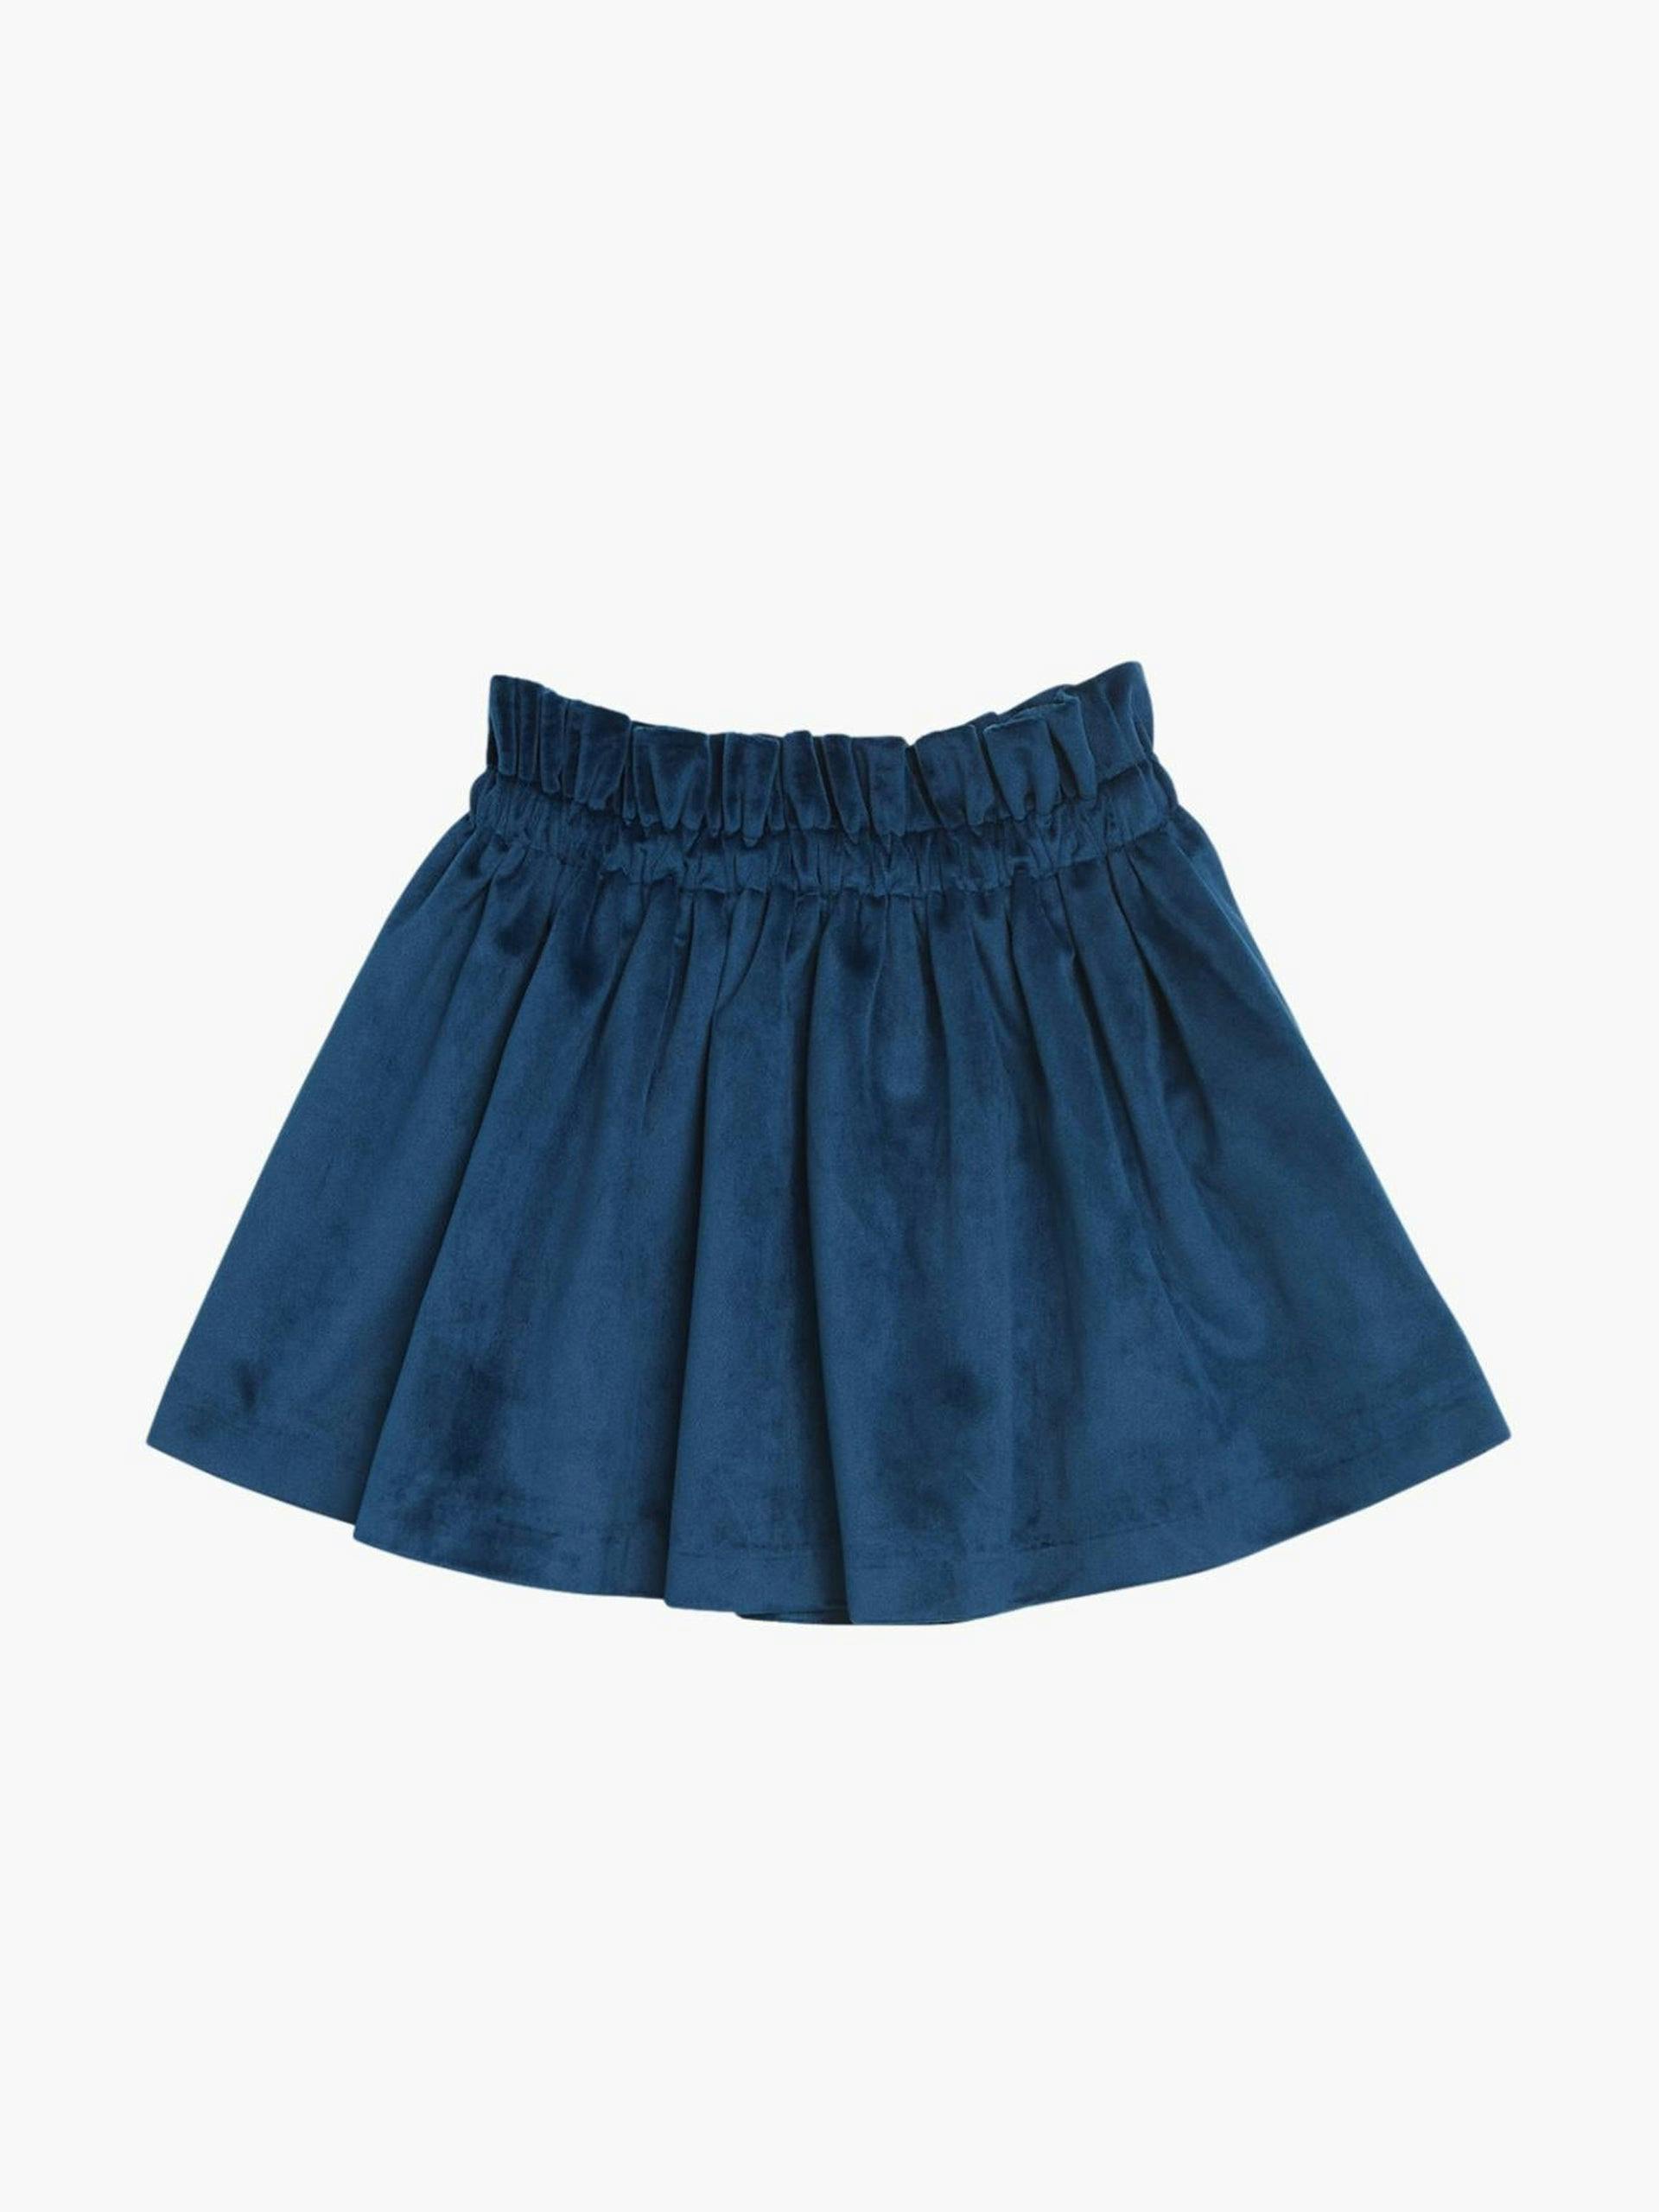 Blue velvet Pestana skirt